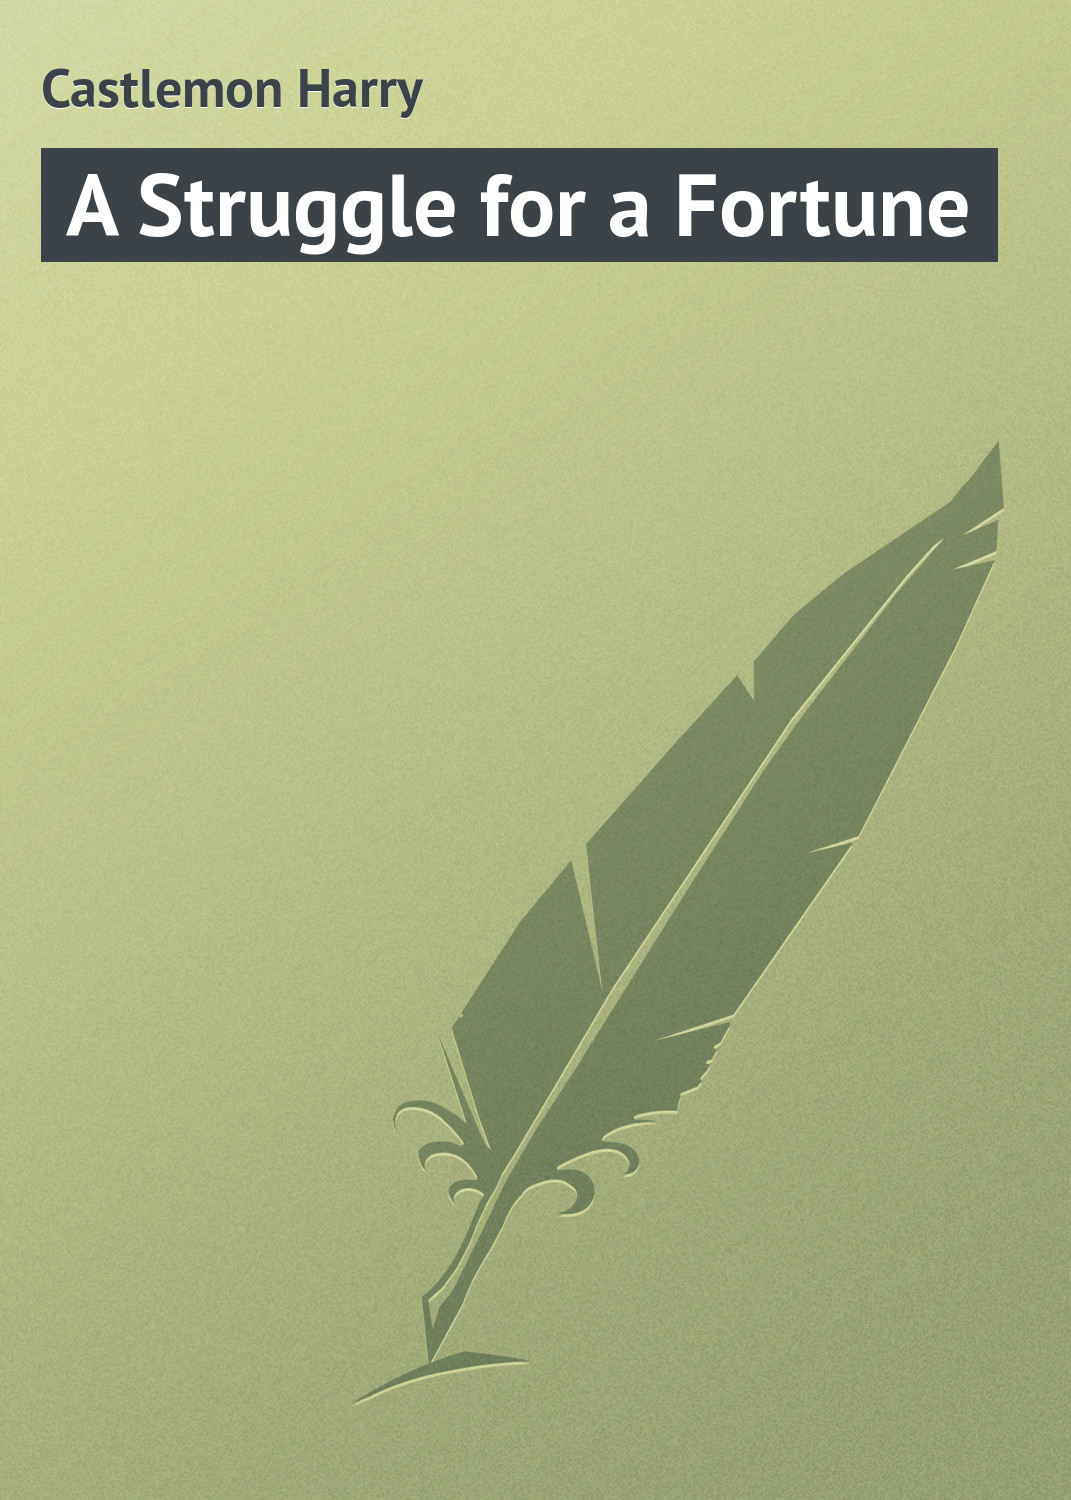 Книга A Struggle for a Fortune из серии , созданная Harry Castlemon, может относится к жанру Зарубежная классика. Стоимость электронной книги A Struggle for a Fortune с идентификатором 23164419 составляет 5.99 руб.